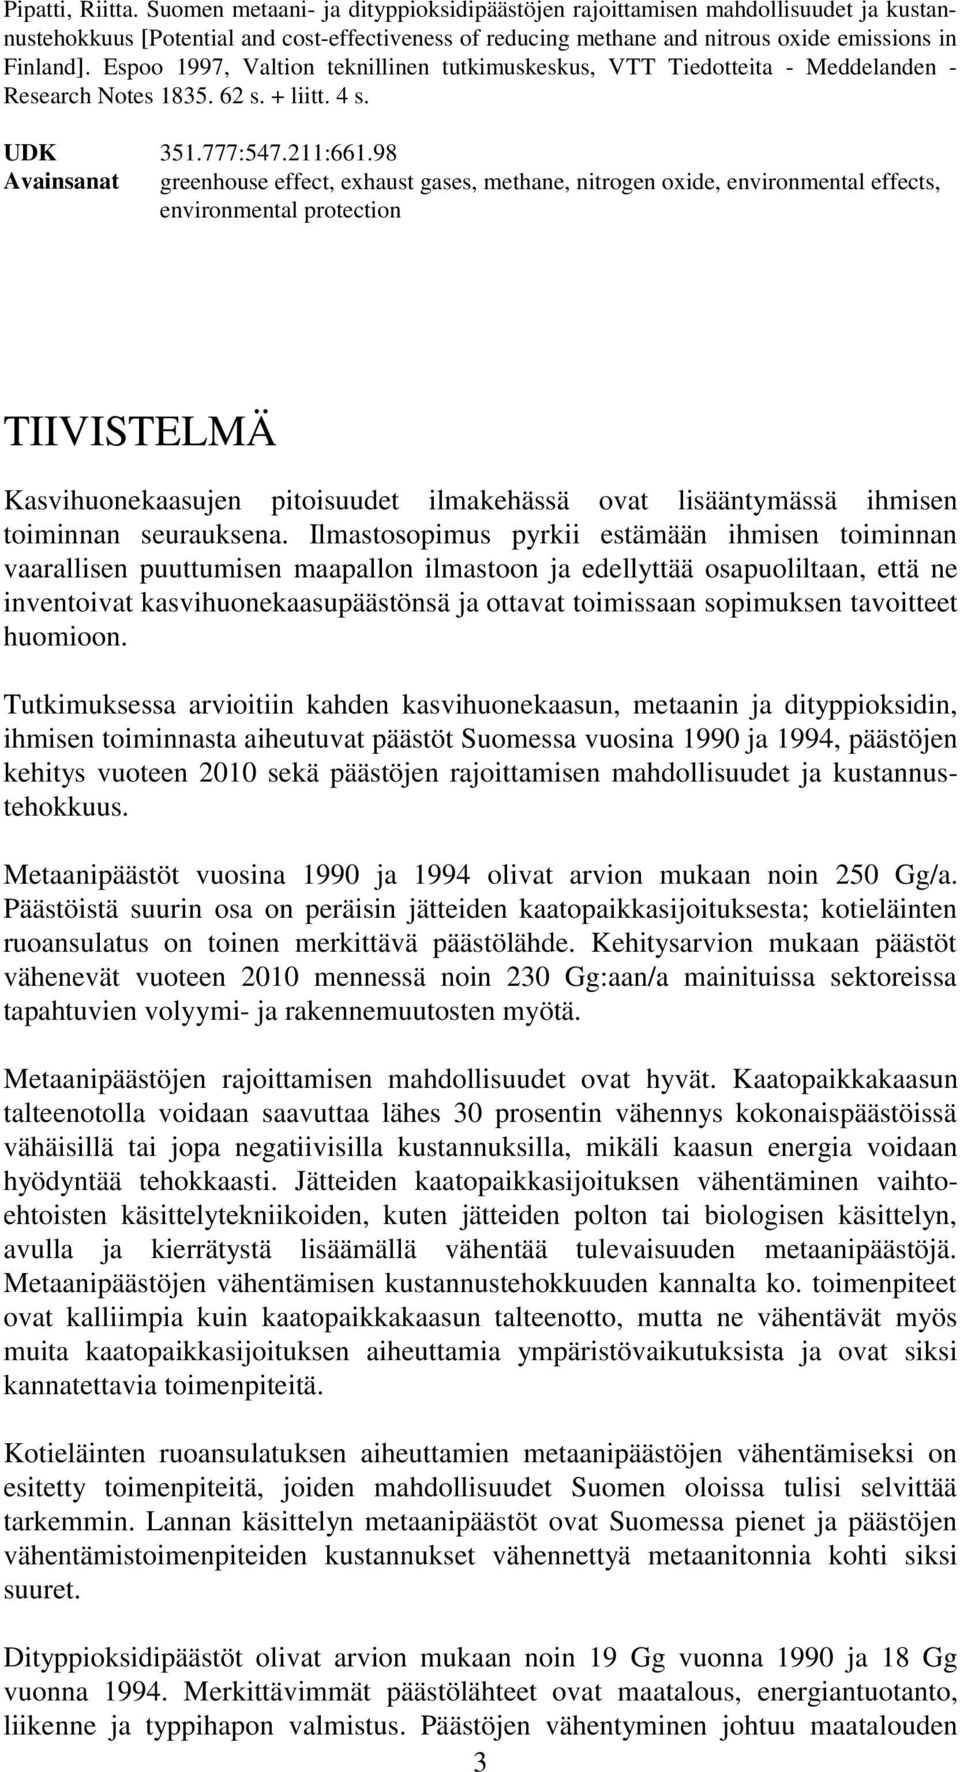 Espoo 1997, Valtion teknillinen tutkimuskeskus, VTT Tiedotteita - Meddelanden - Research Notes 1835. 62 s. + liitt. 4 s. UDK 351.777:547.211:661.